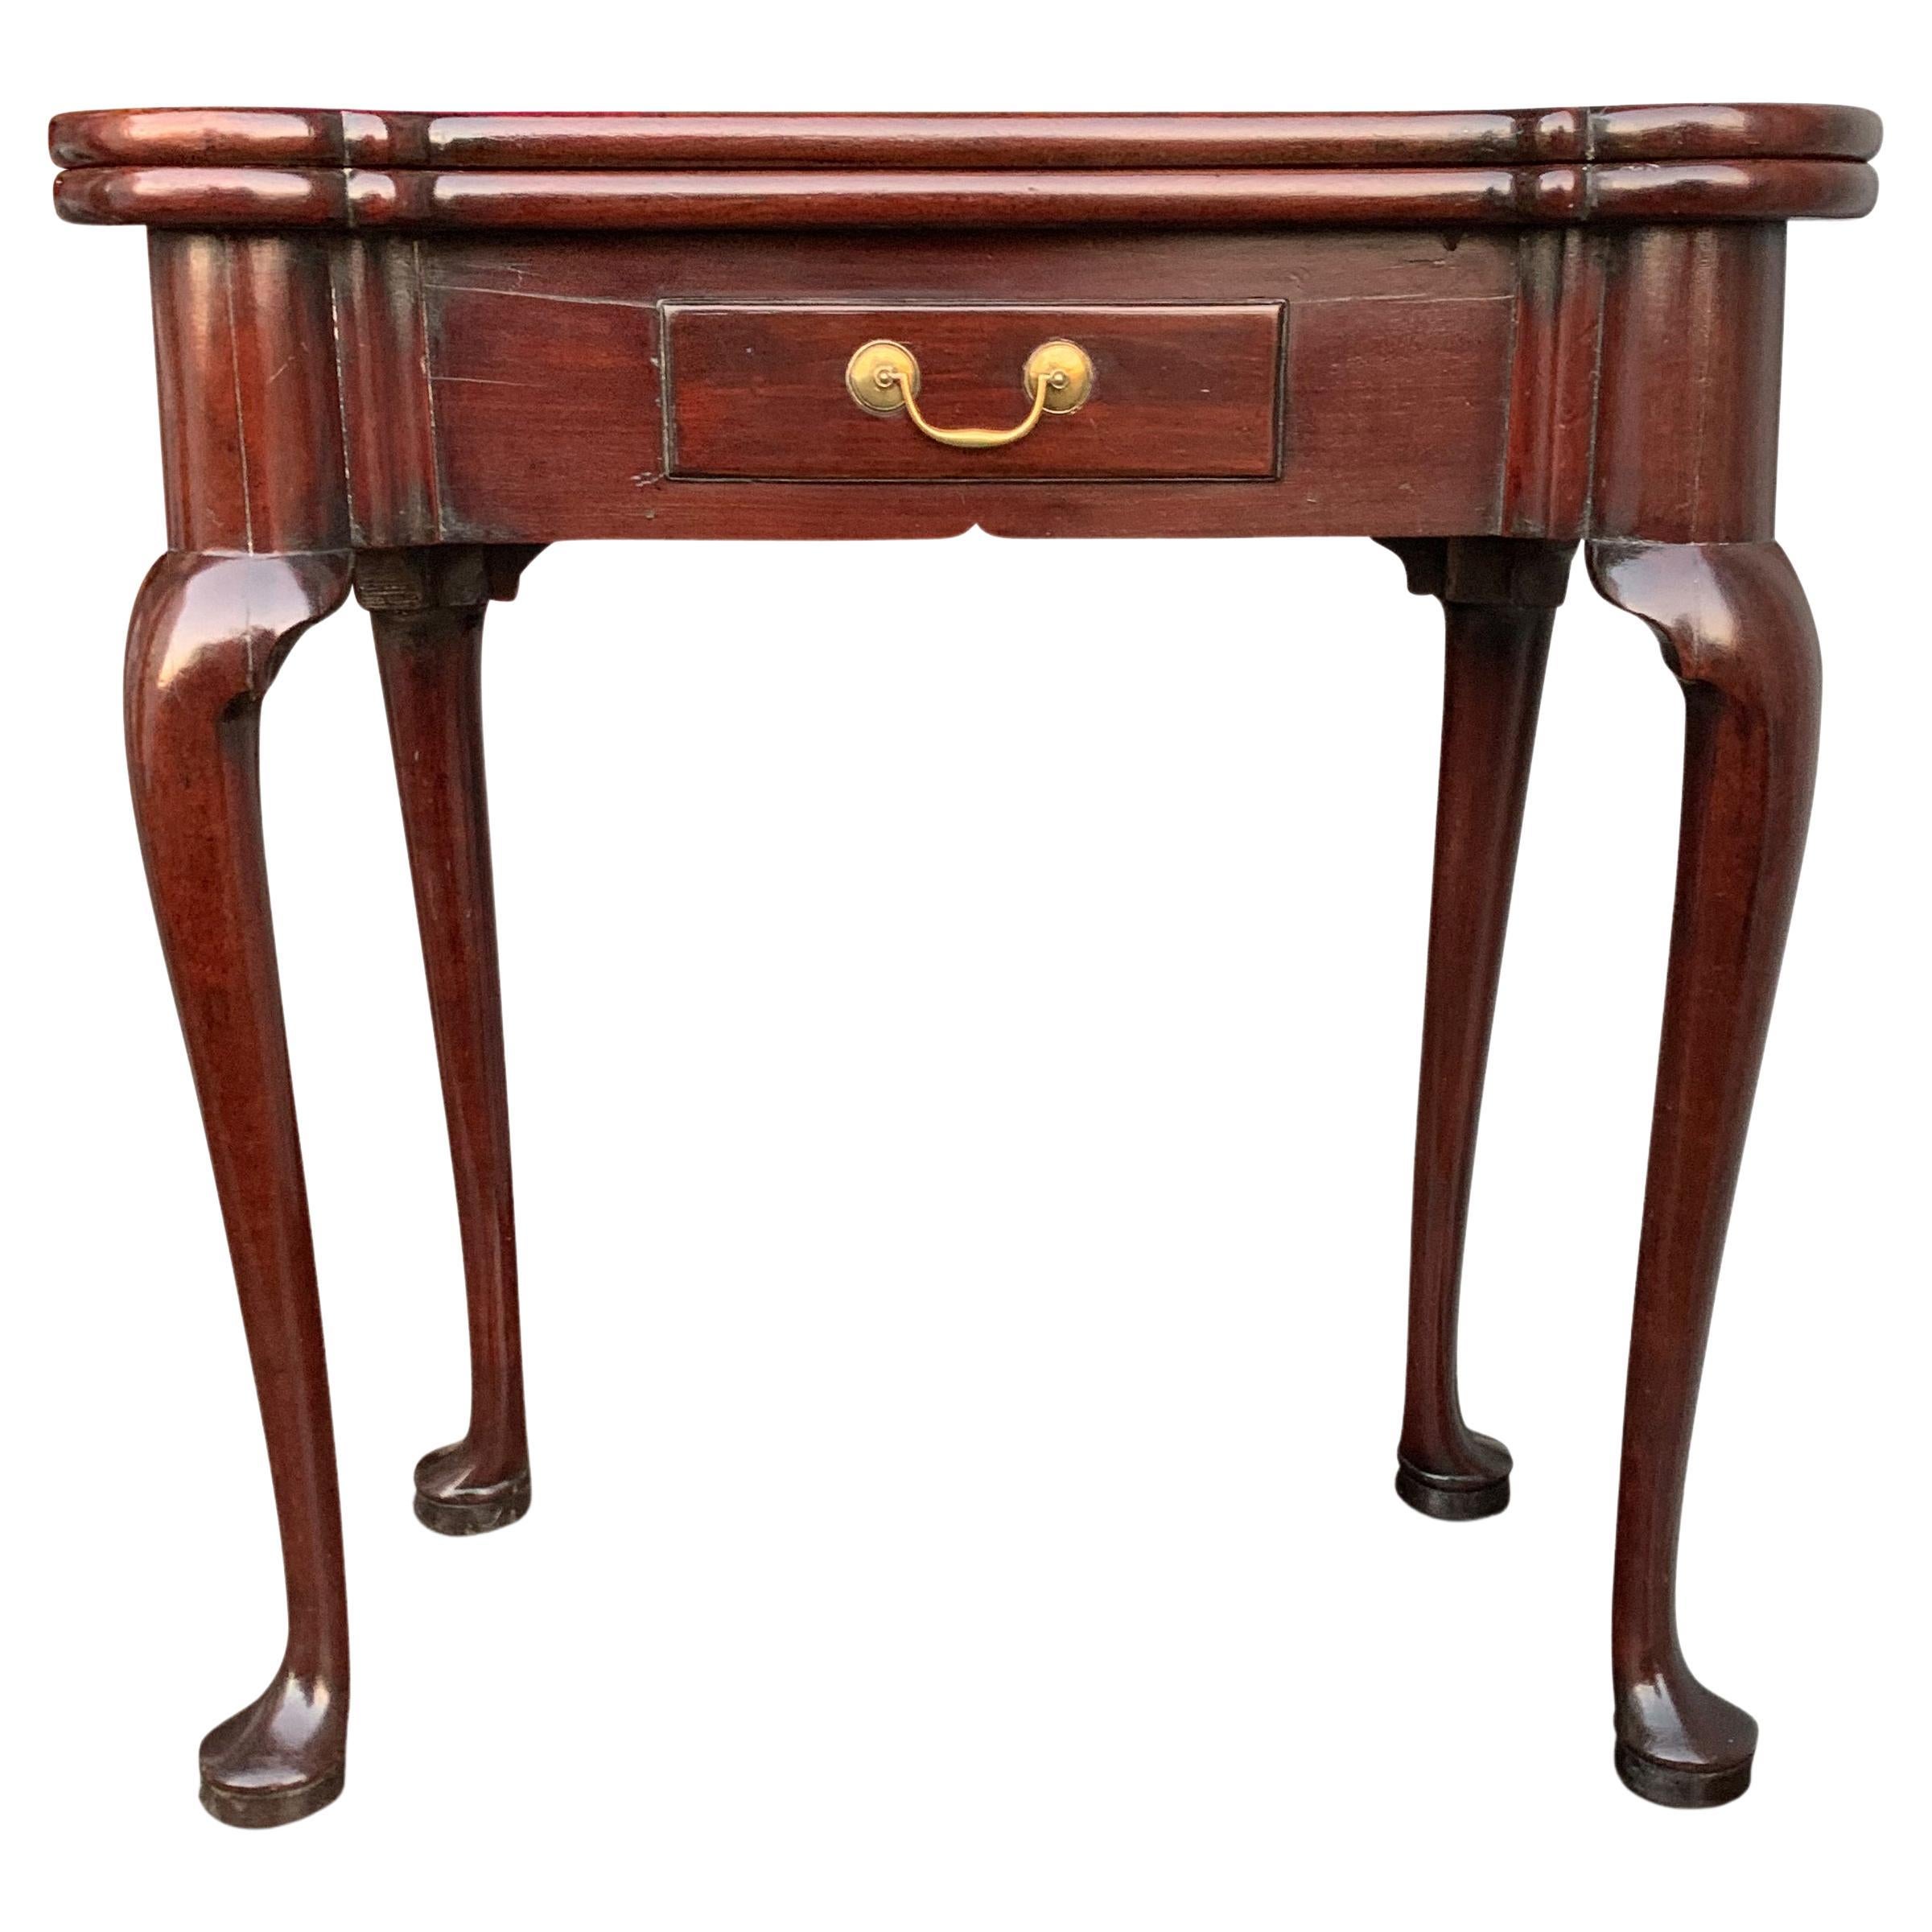 Exquise table à thé à abattant en acajou poli du milieu du XVIIIe siècle de George II, avec des pieds en cabriole sur des terminaux en pad, finie avec une poignée de tiroir en laiton.

Comme tous les meubles de cette période de l'histoire, les